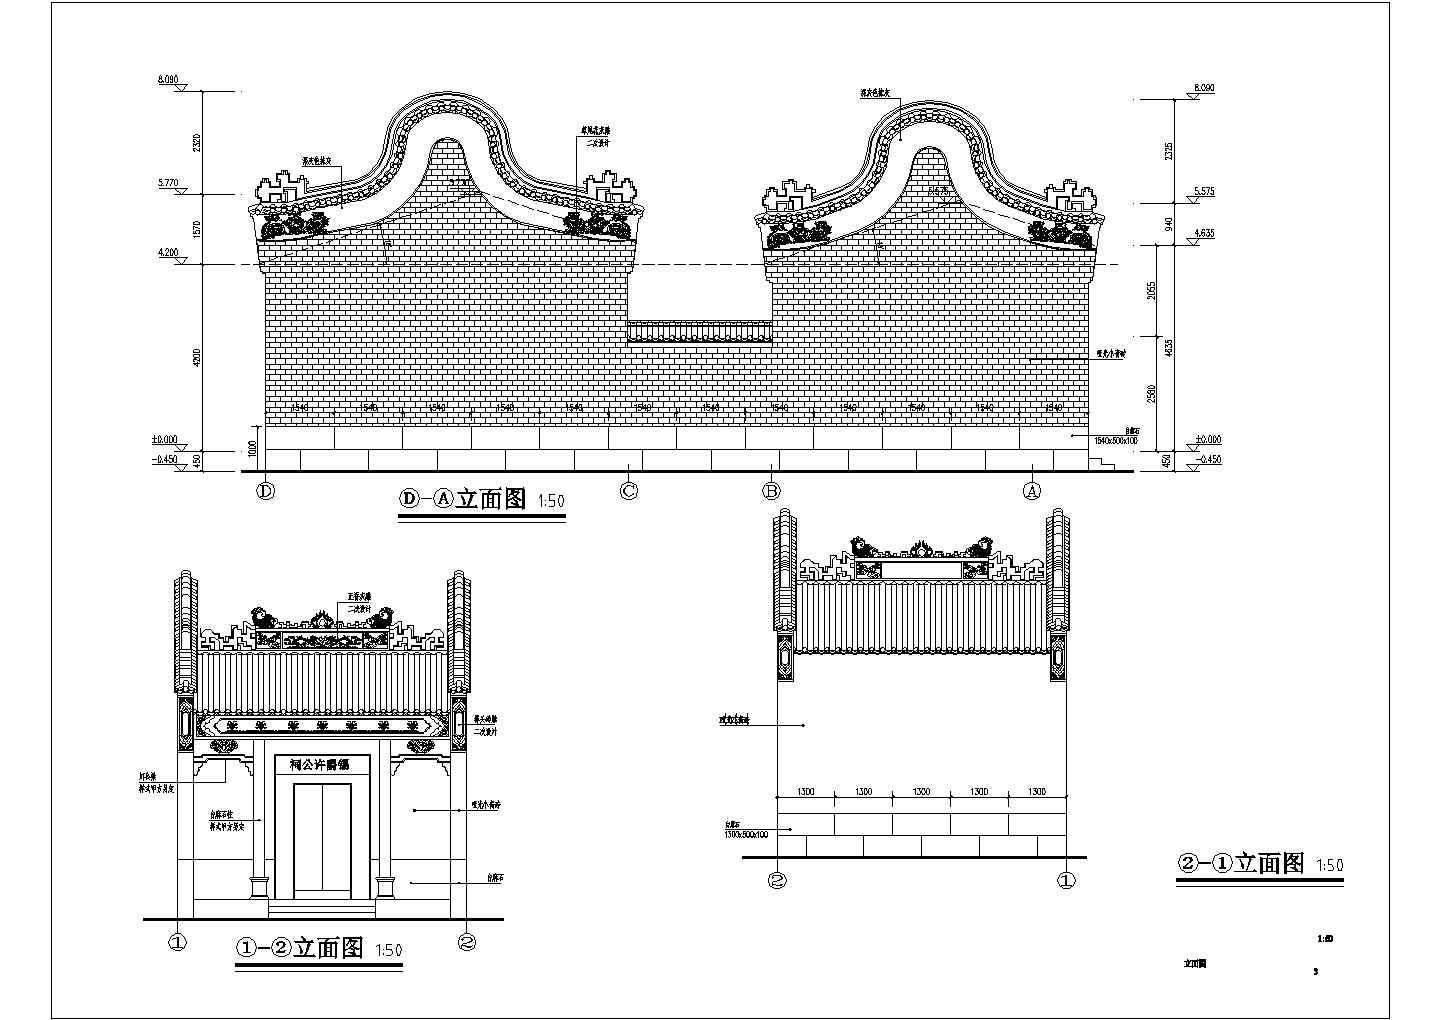 岭南地区祠堂建筑与结构设计方案图纸